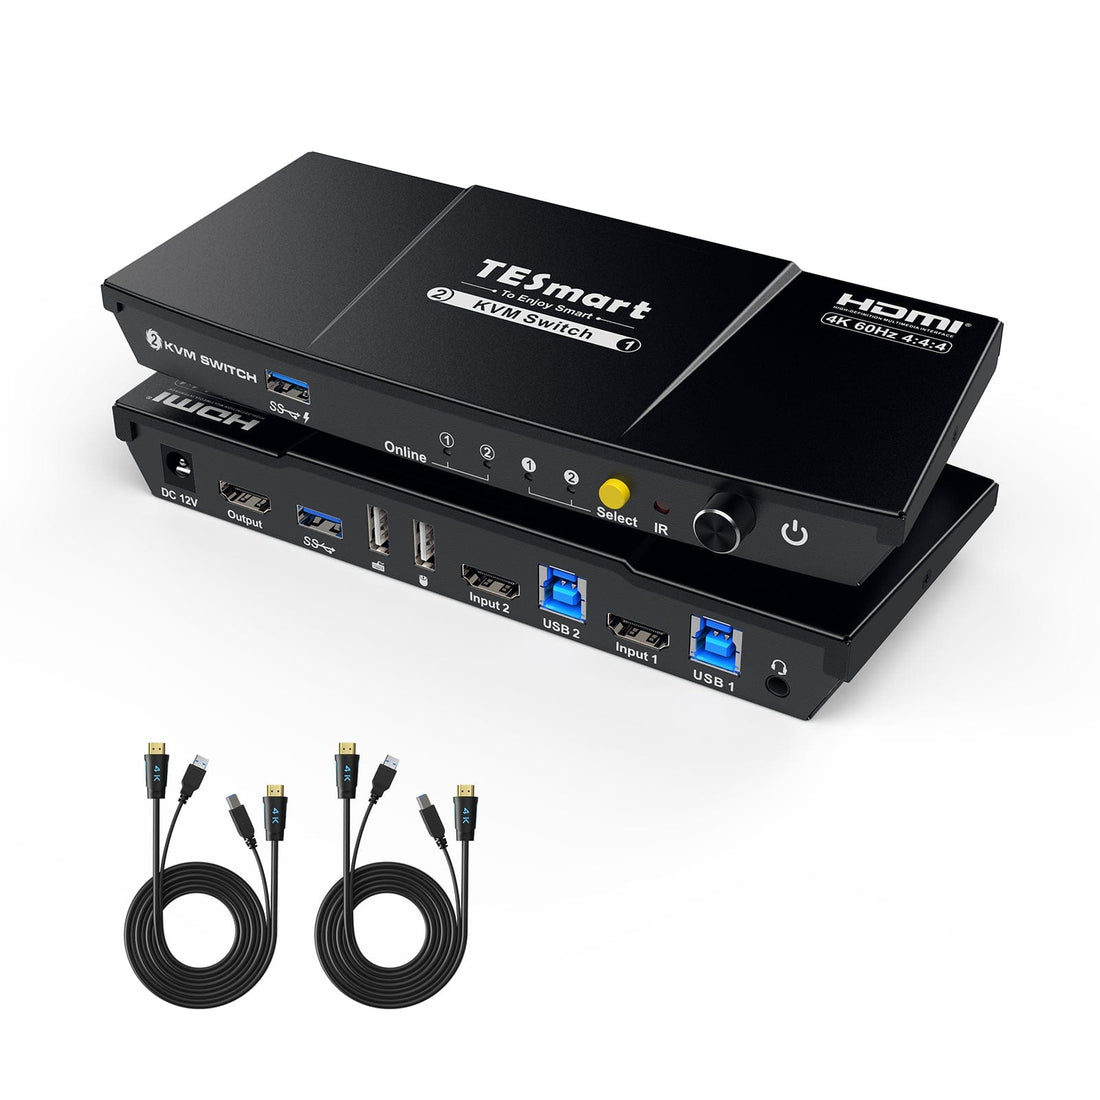 TESmart.DE HKS201-P23-EUBK 2-Port KVM-Switch-Kit HDMI 4K60Hz mit USB 3.0 Dockingstation, 2 PCs 1 Monitor 10652805090440